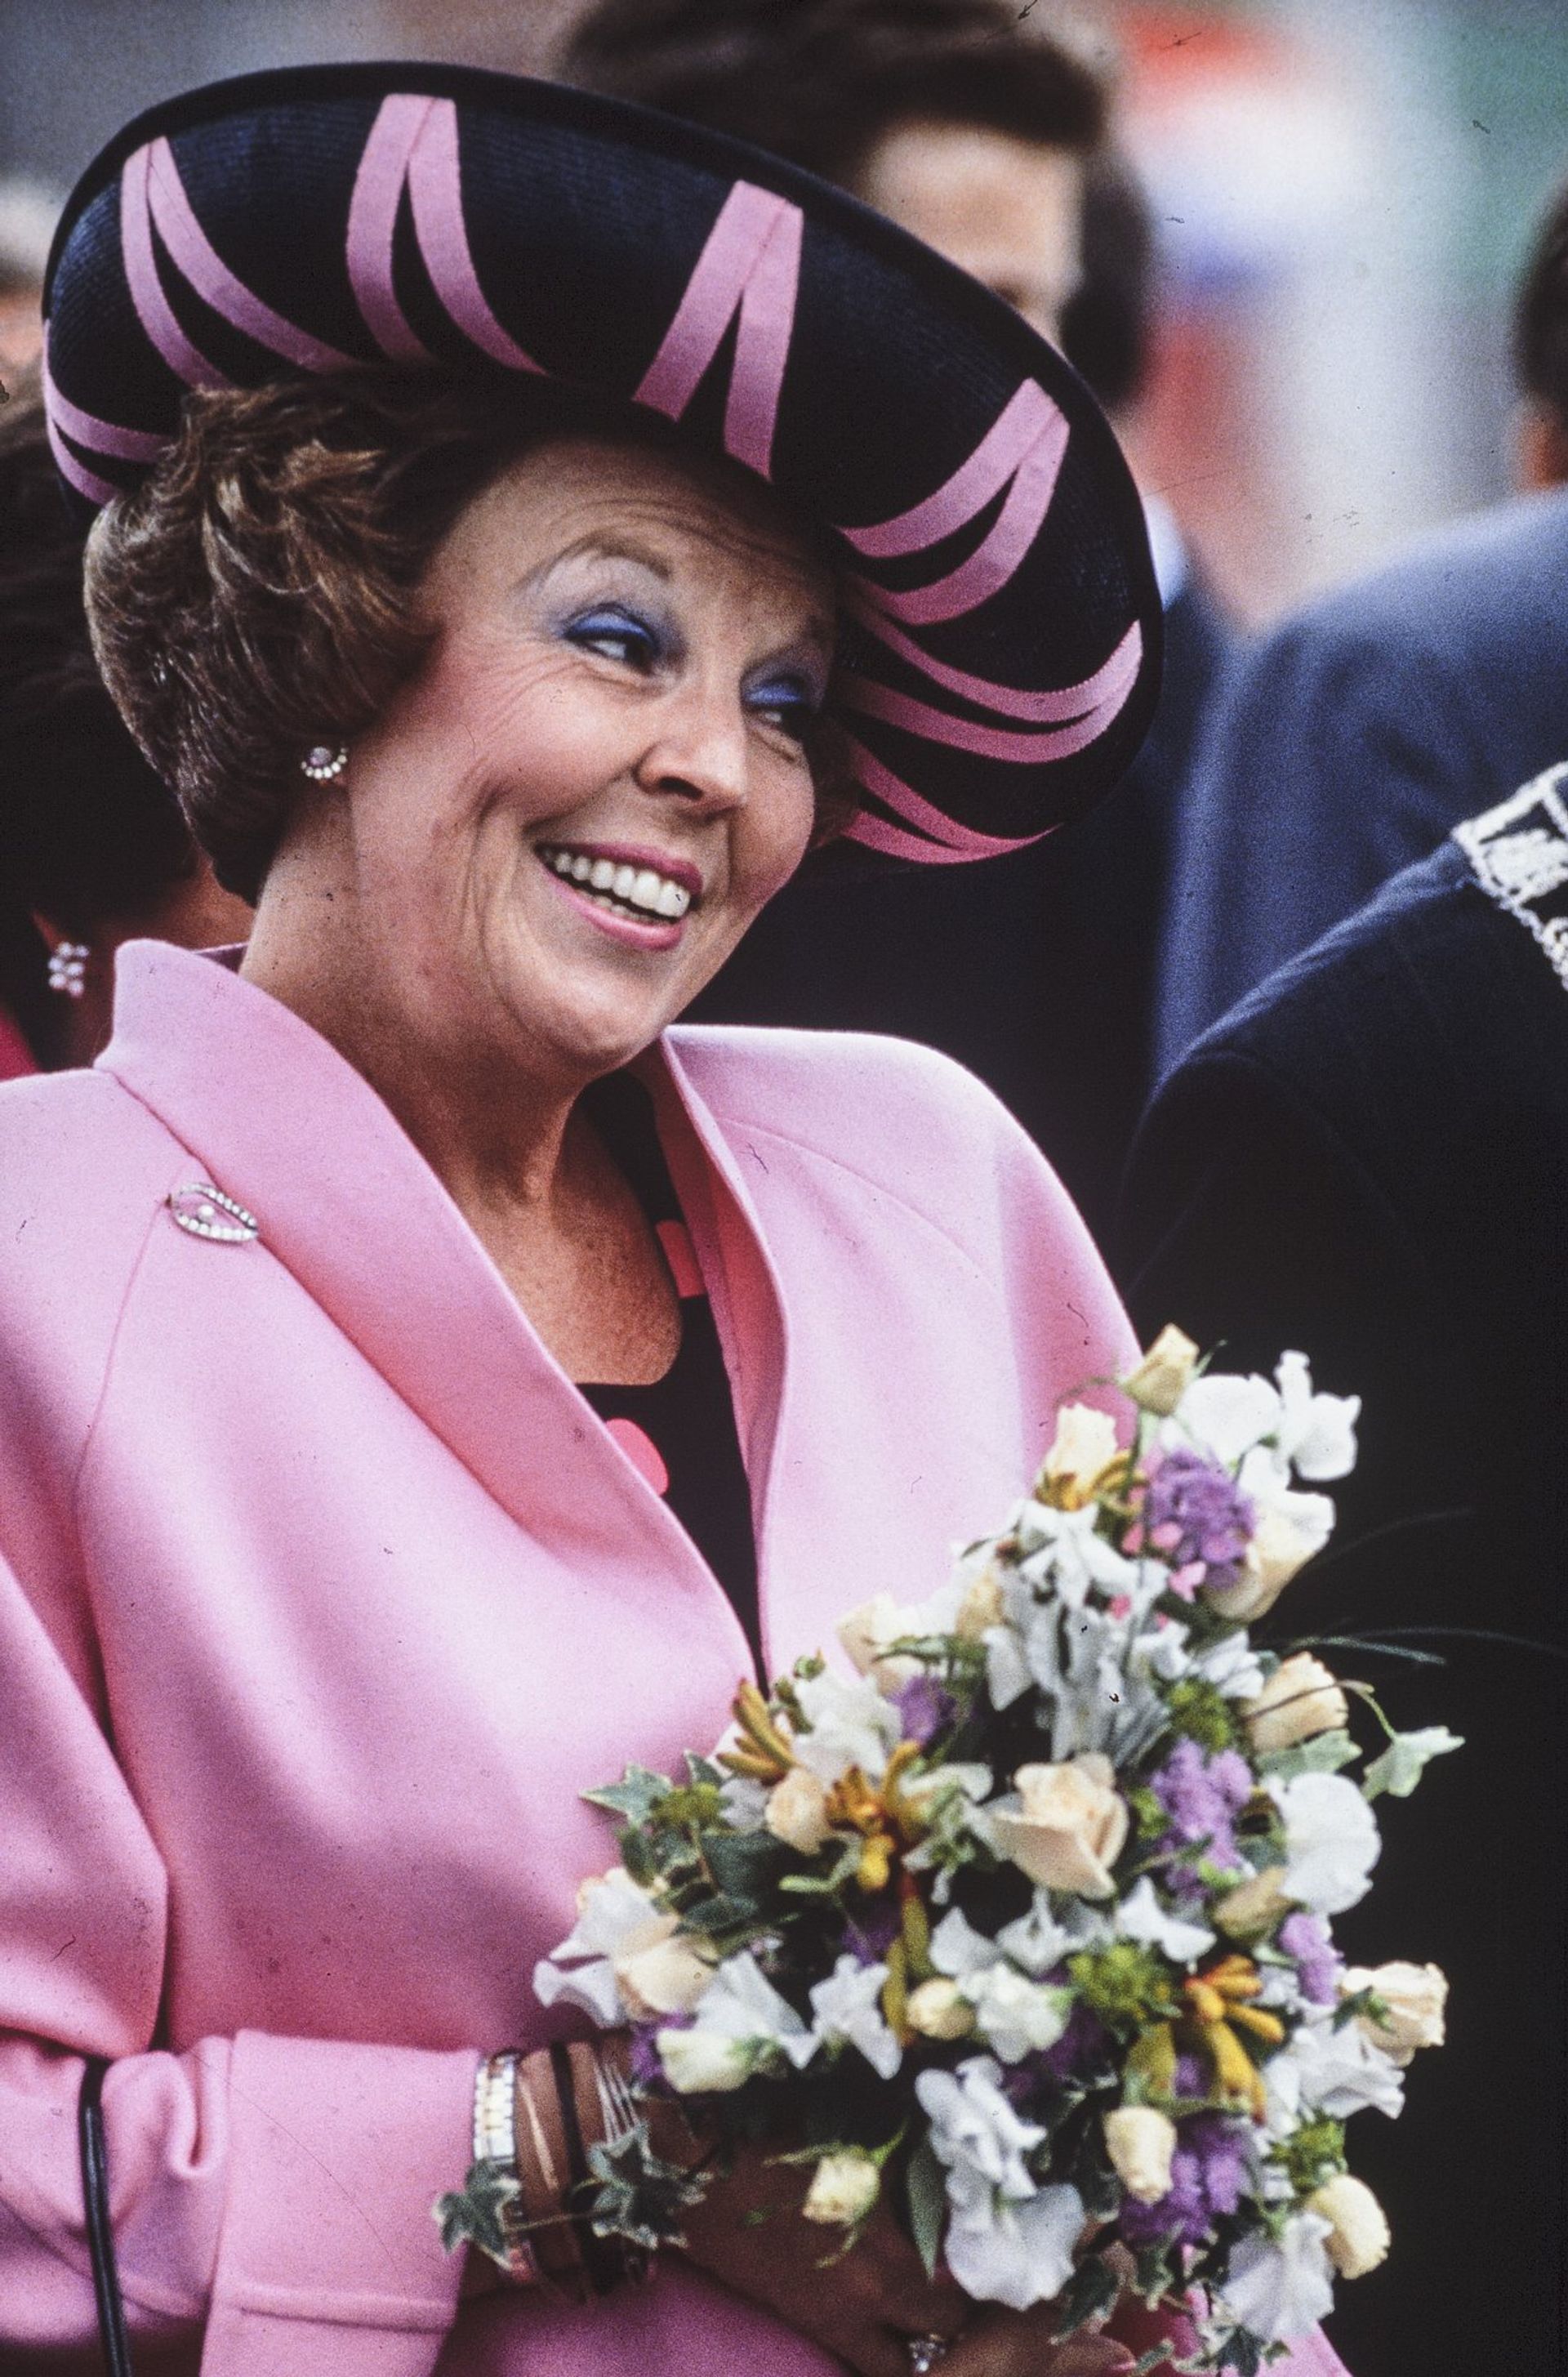 Koninginnedag 1992 in Rotterdam. De koninklijke familie deed hier éé plaats aan. Ook haar zonen